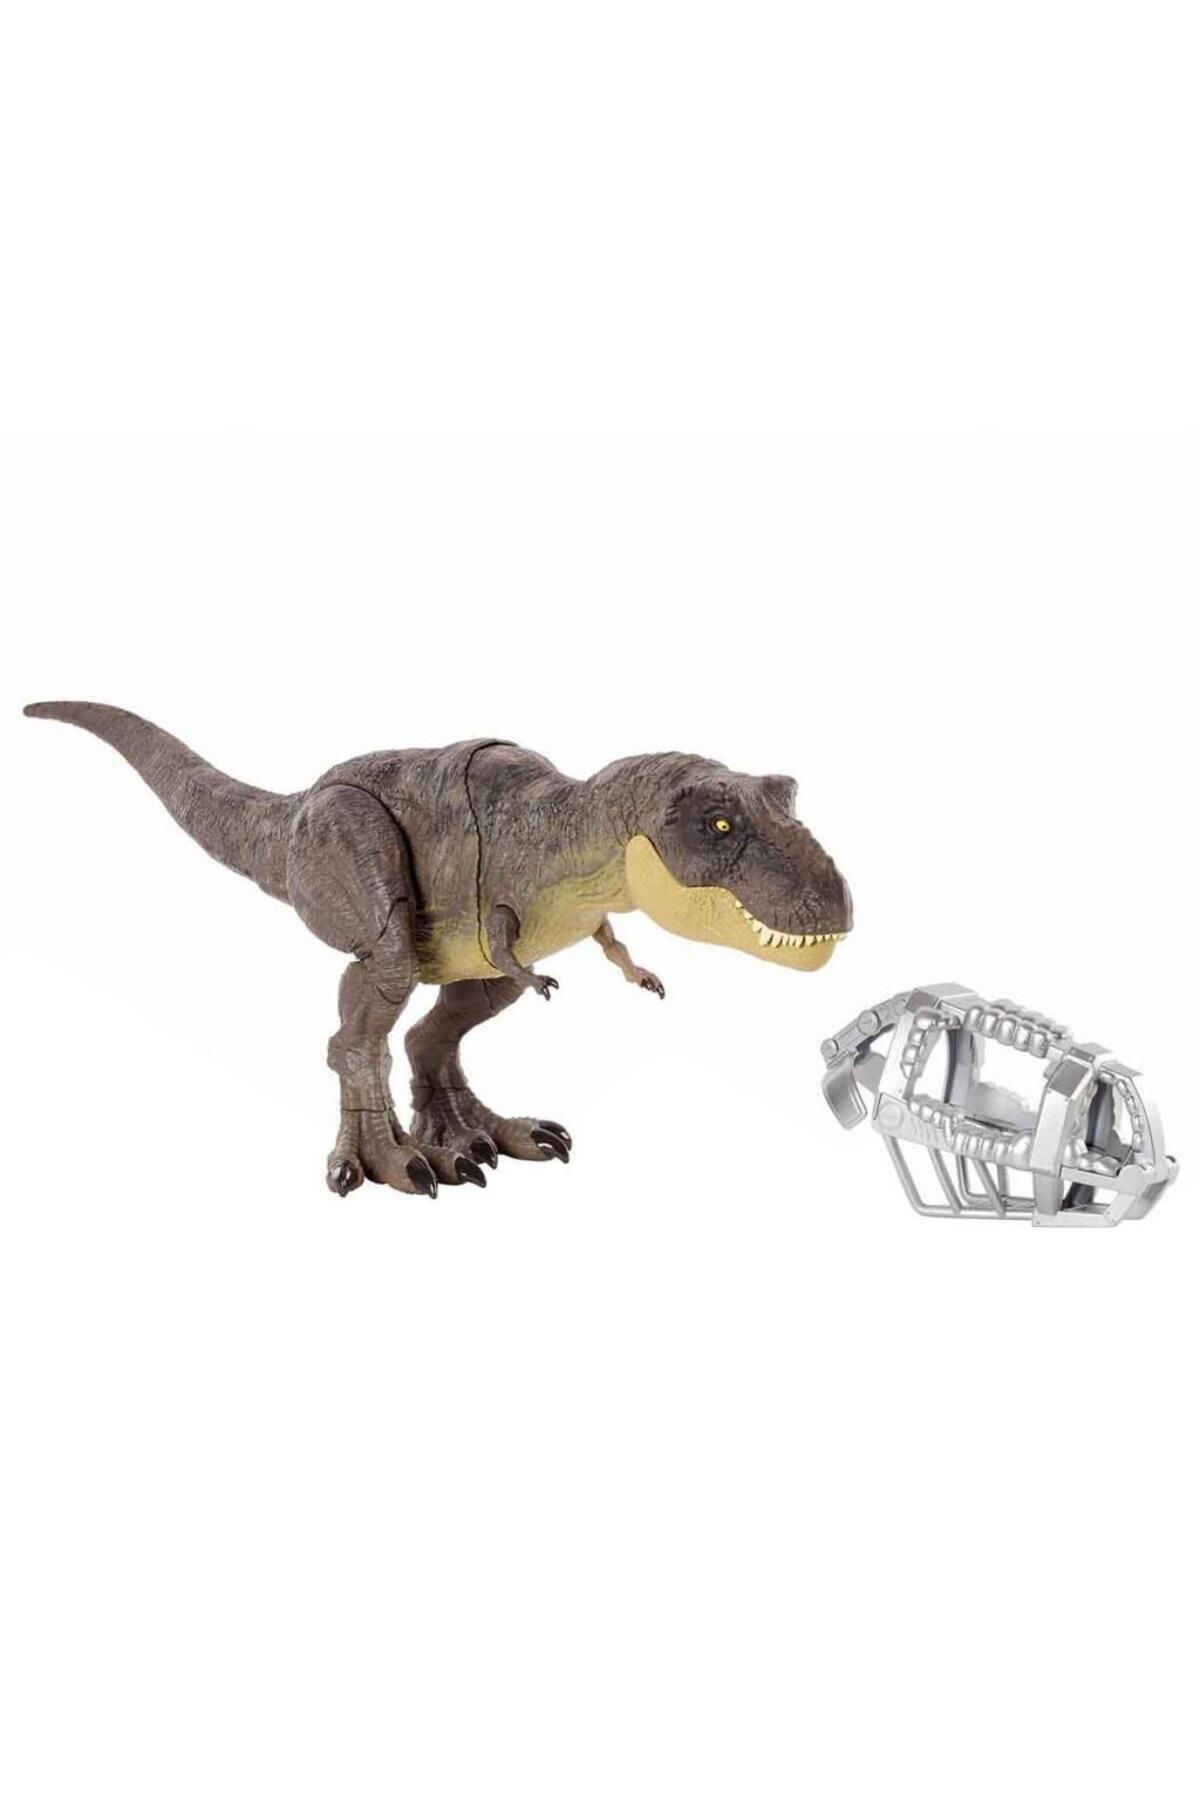 Jurassic World Yürüyen Mücadeleci T-rex Figürü, Isırma Hareketi, Hareketli Eklemleri Ve Özgün Tasar